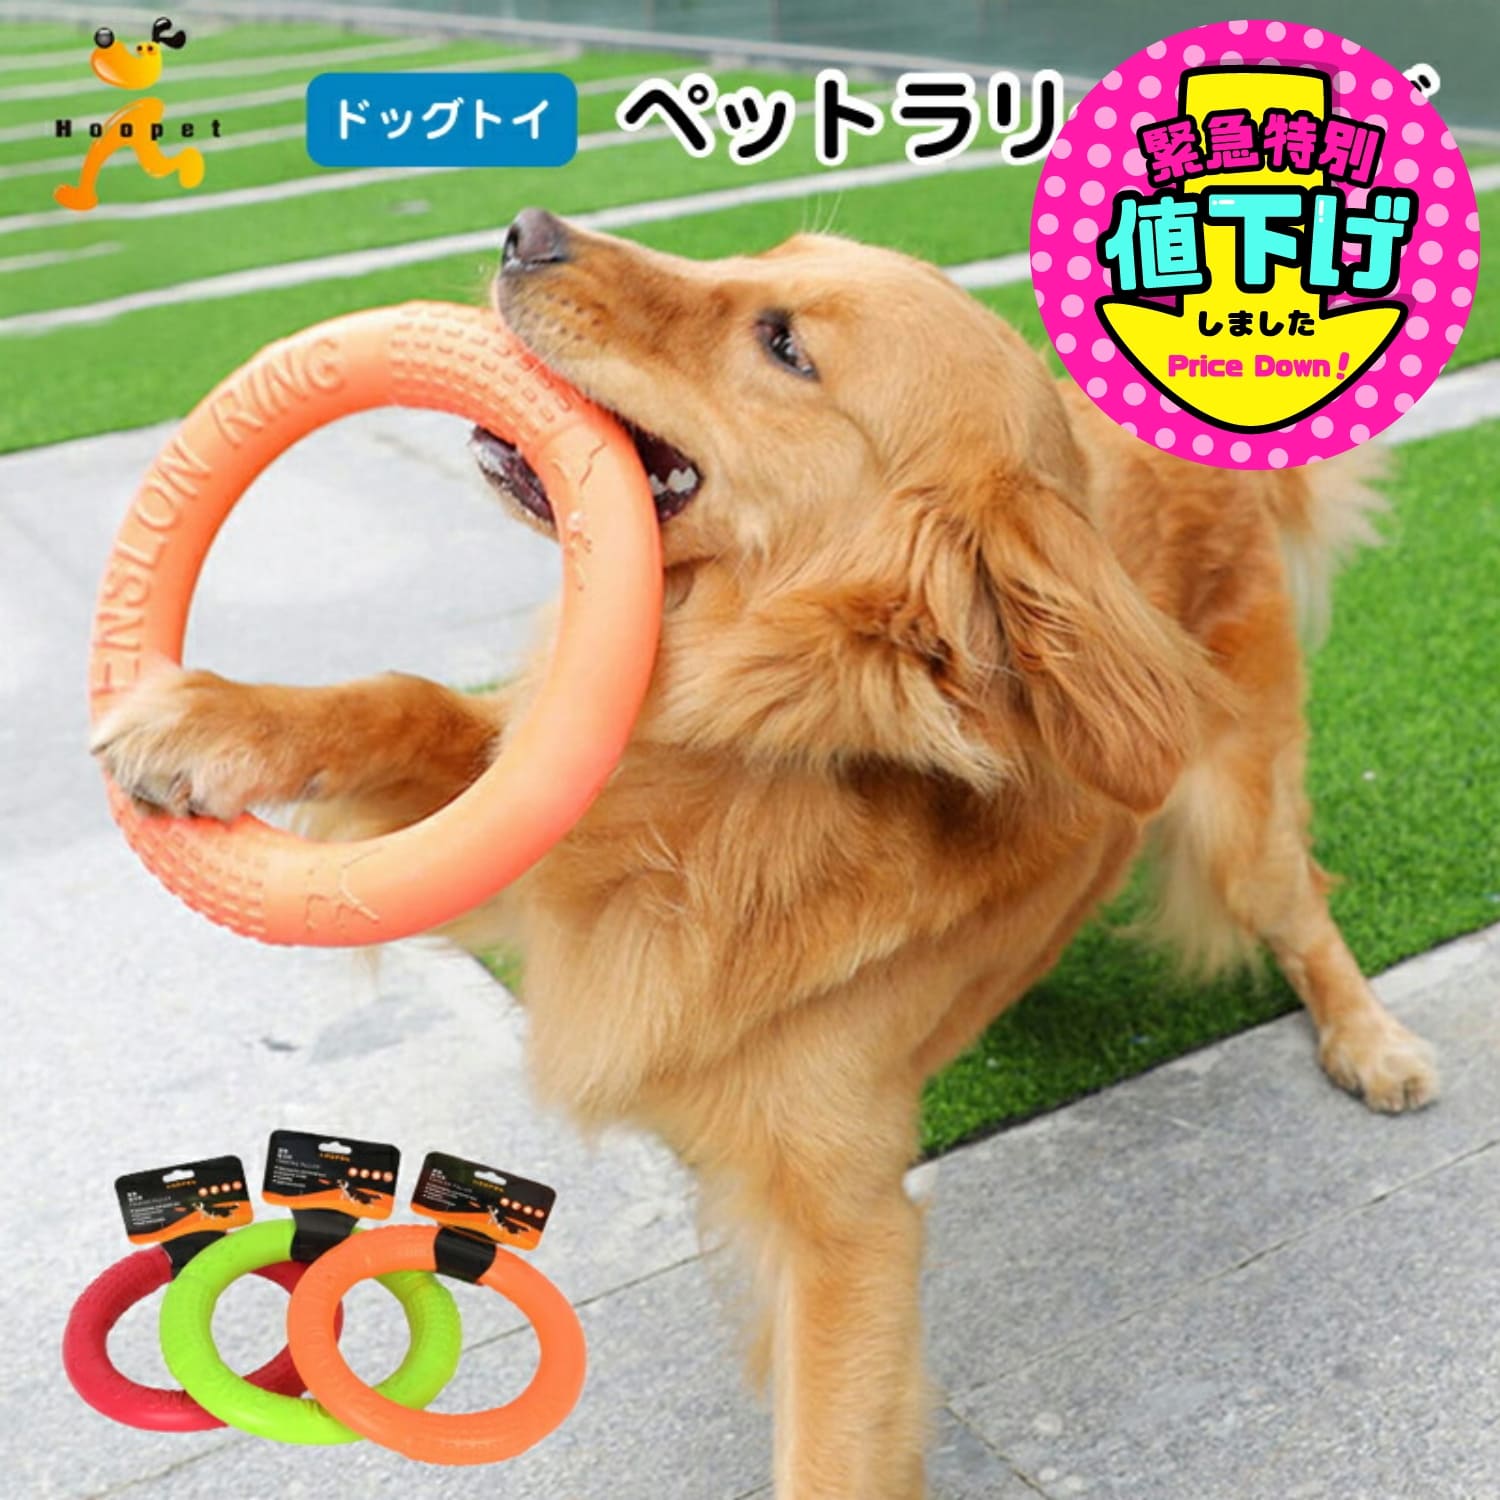 ドッグトイ 犬のおもちゃ ペットラリーリング 臼歯のクリーニング おもちゃ 大型犬 サイドシェパード ラブラドール インタラクティブトレーニングおもちゃ オレンジ グリーン レッド 柔らかい Sサイズ Lサイズ